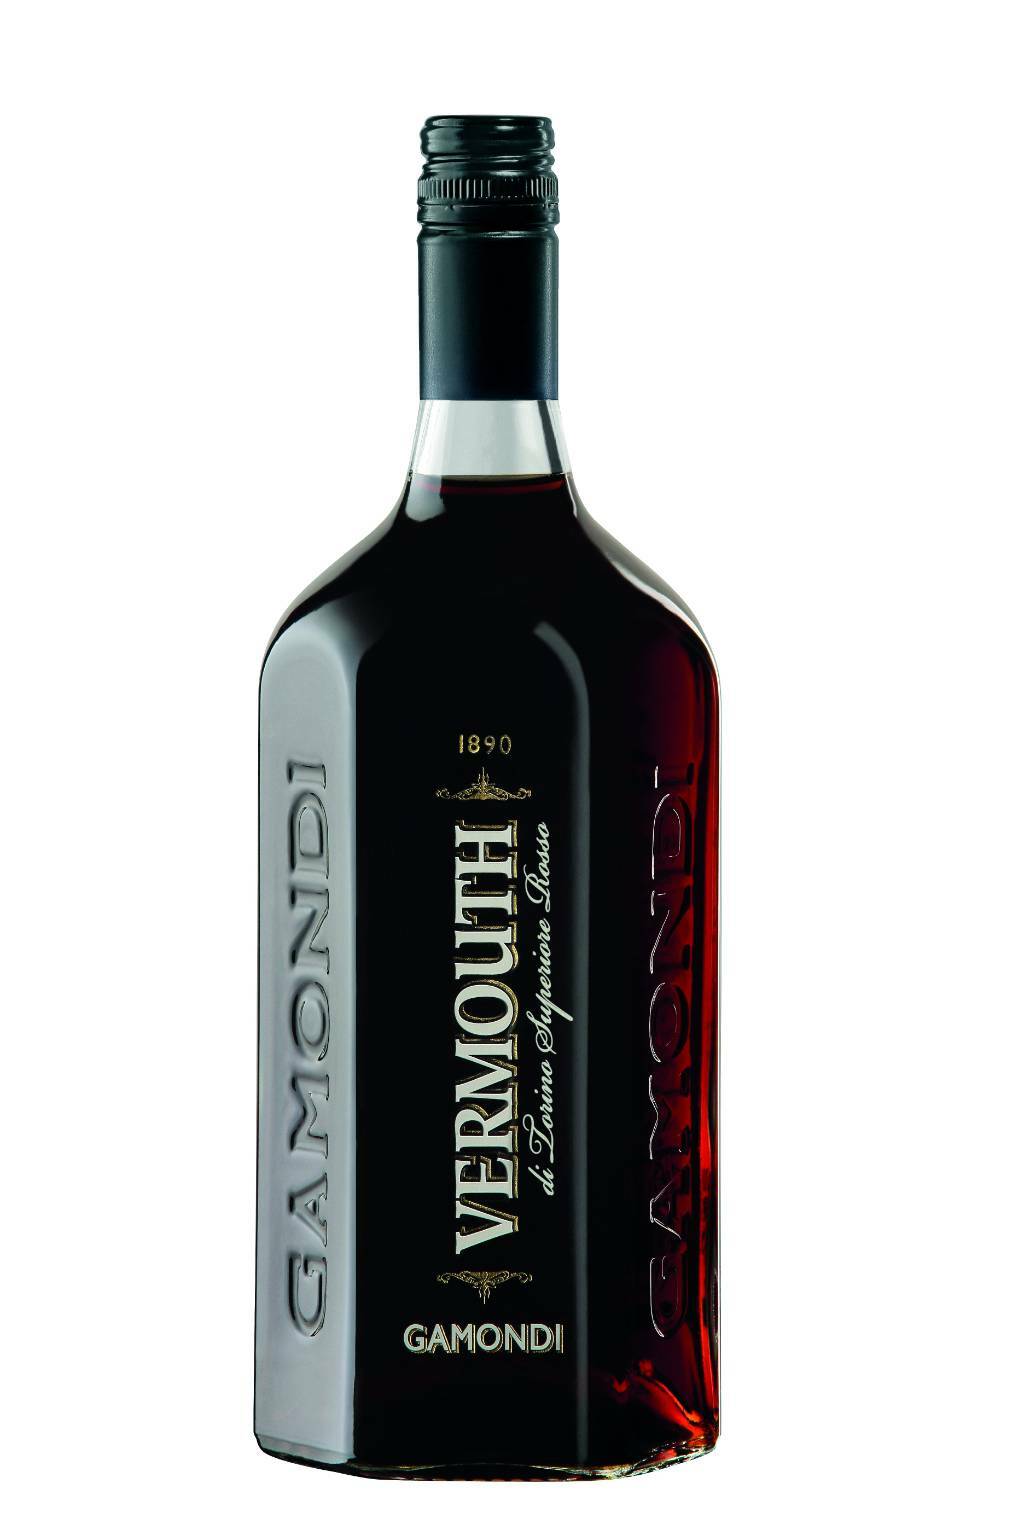 Gamondi, prodotto delle Cantine cuneesi Toso, eletto Vermouth dell’anno 2020